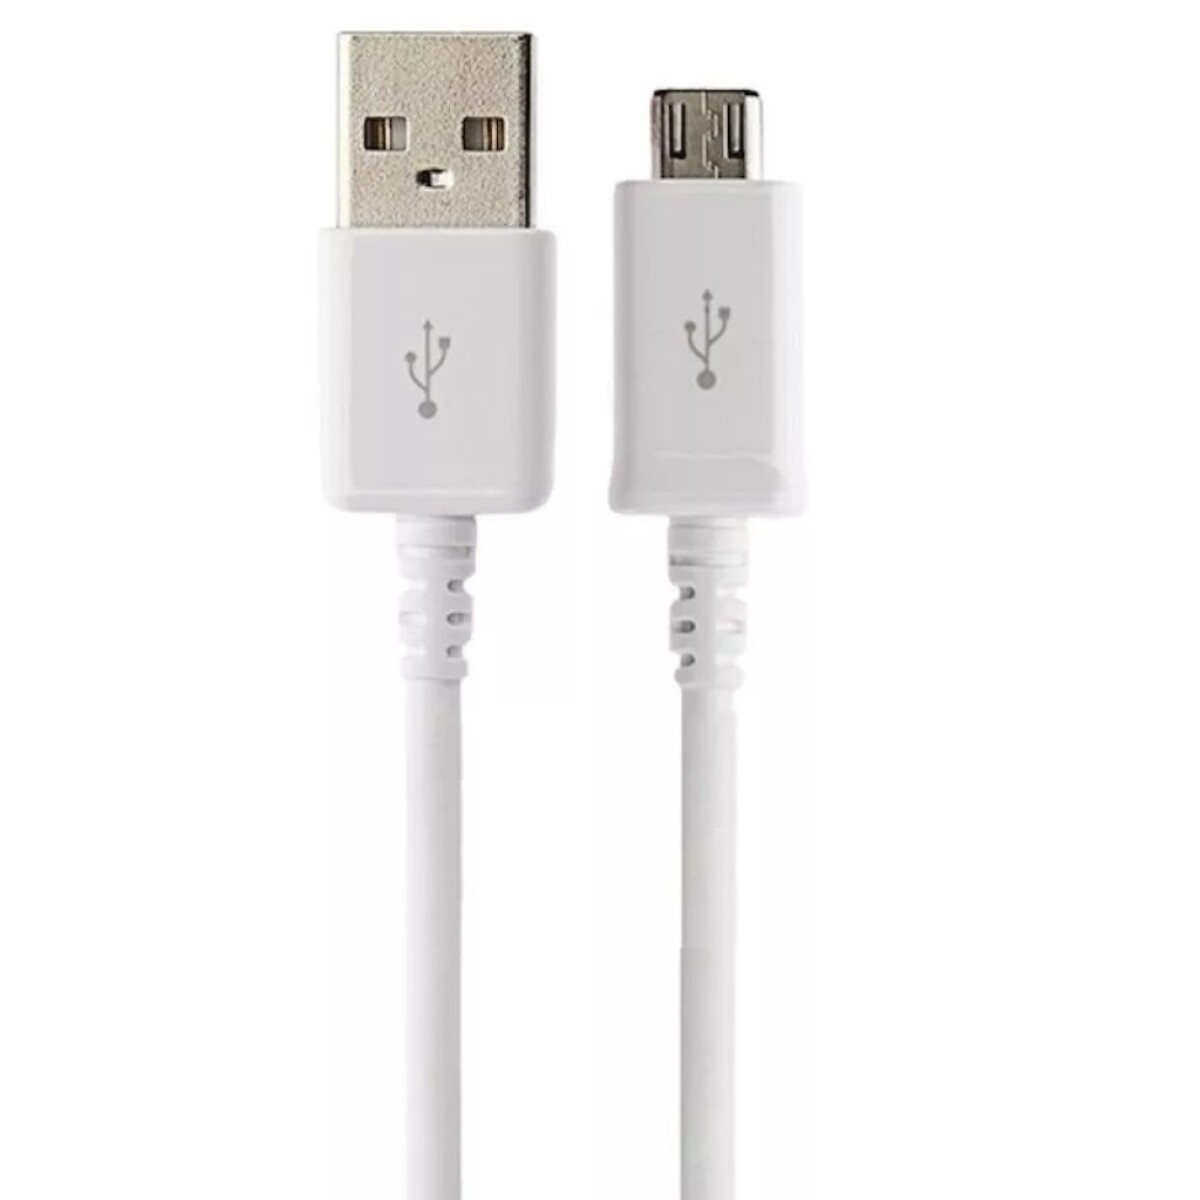 Cable USB 2.0 a MicroB macho/macho 1 mts Blanco OEM - Cable Usb 2.0 A Microb Macho/macho 1 Mts Blanco Oem 